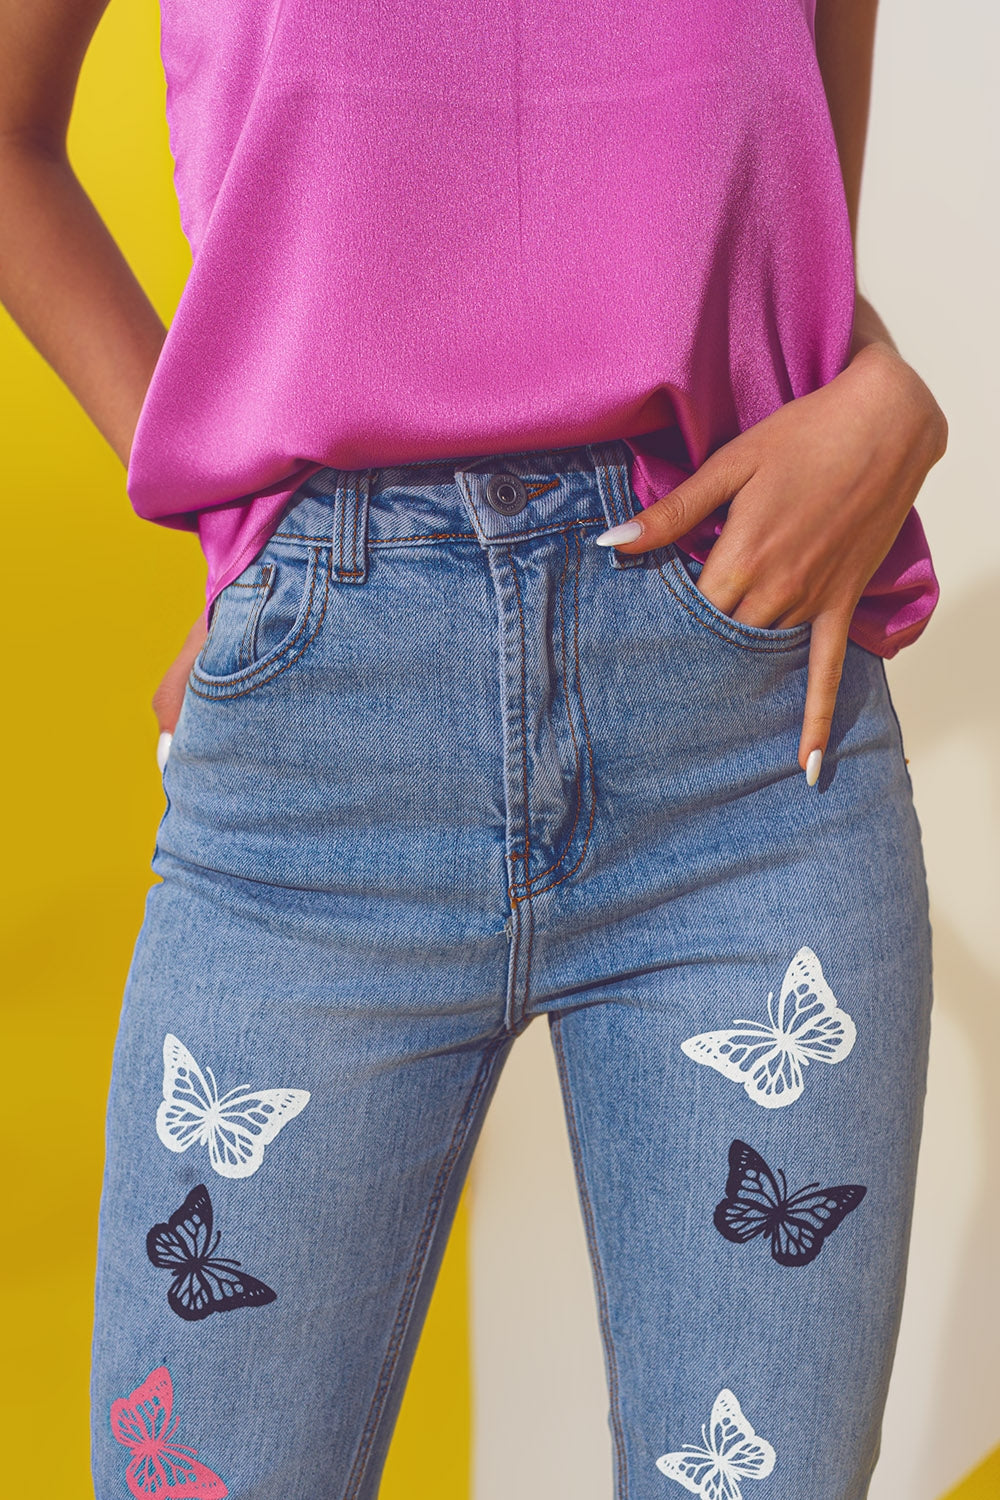 Butterfly Detail Skinny Jeans in Light Blue Wash - Szua Store